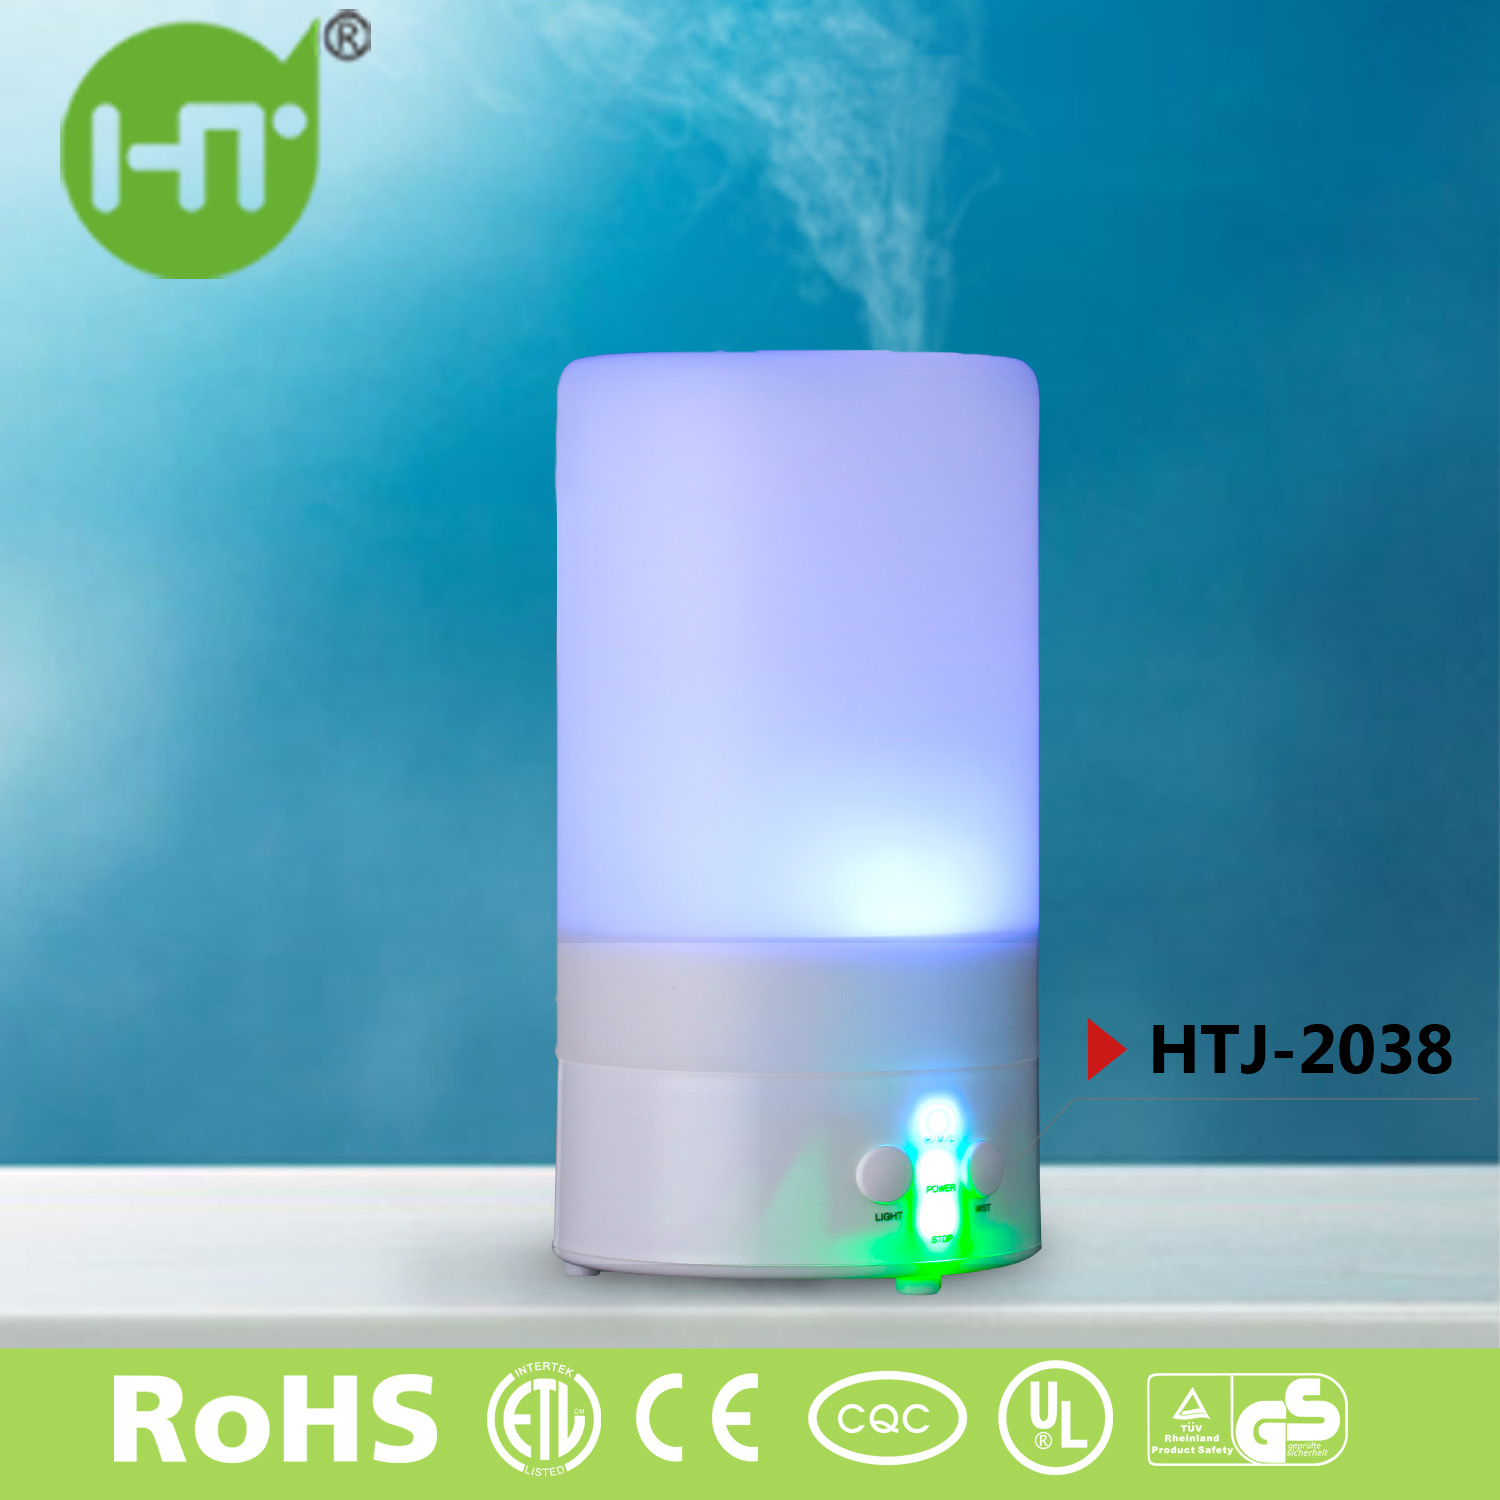 HTJ-2038 0.8L LED Night Light Portable Humidifier